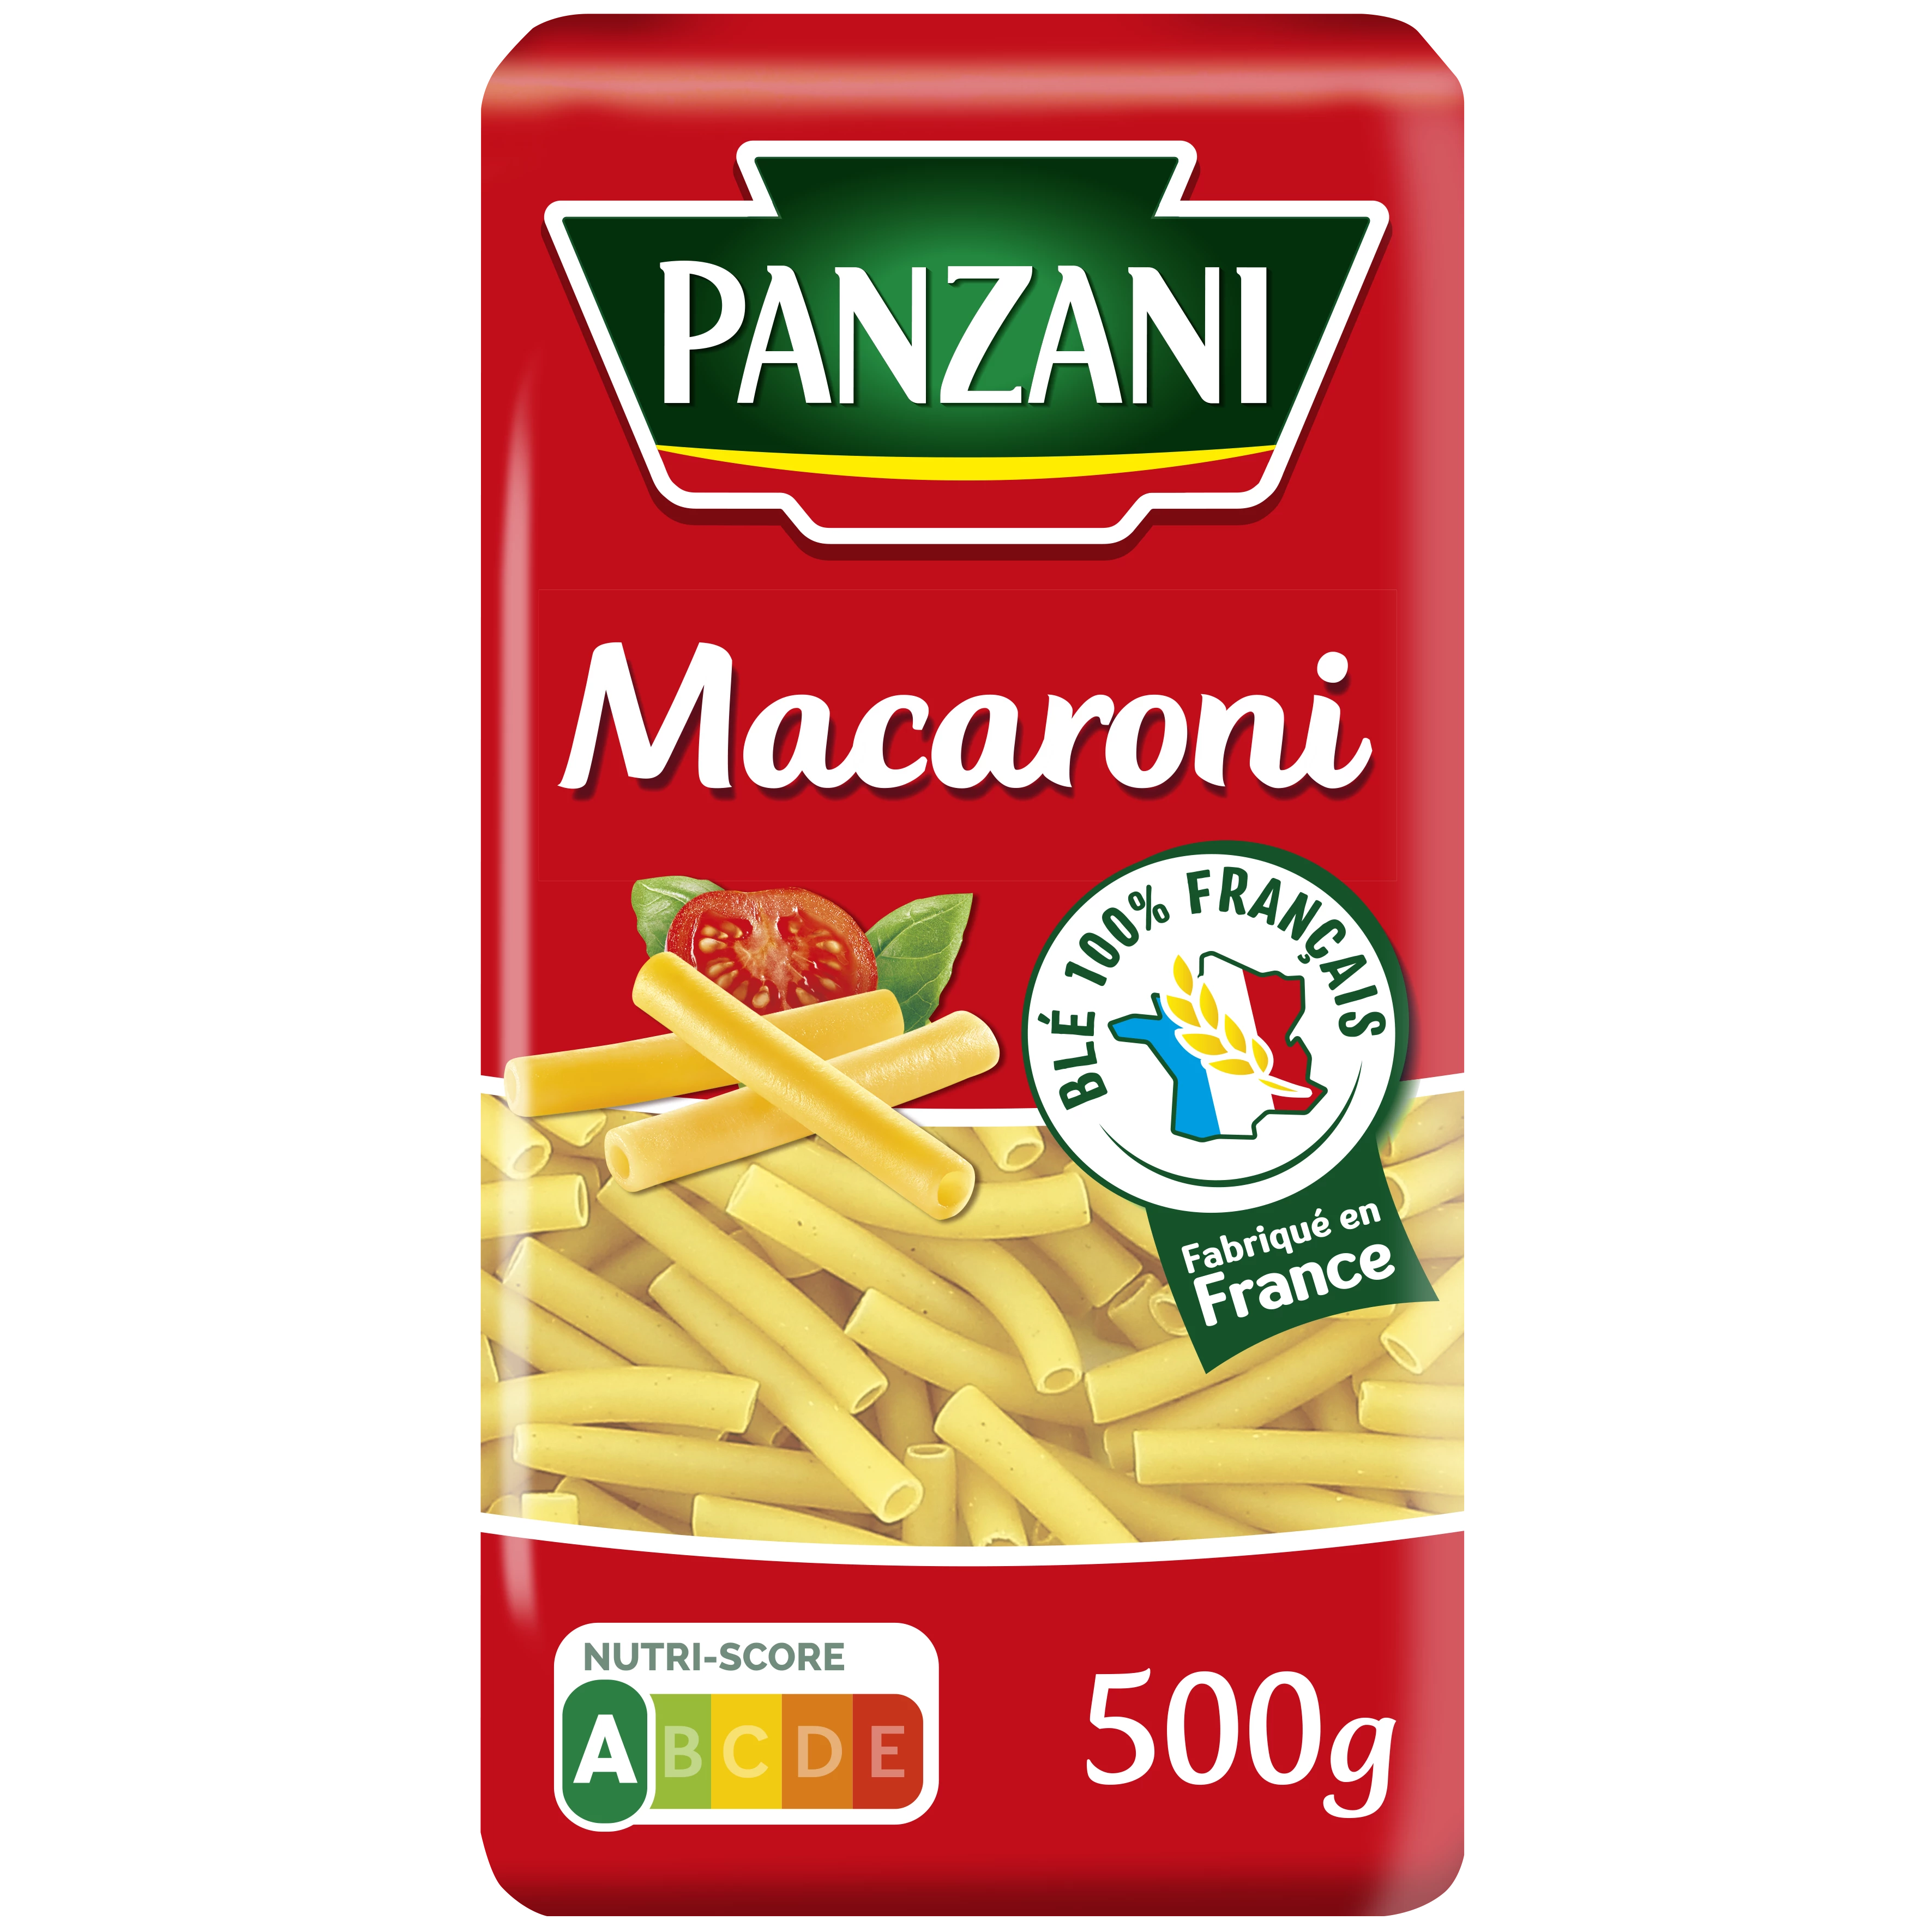 मैकरोनी पास्ता, 500 ग्राम - PANZANI